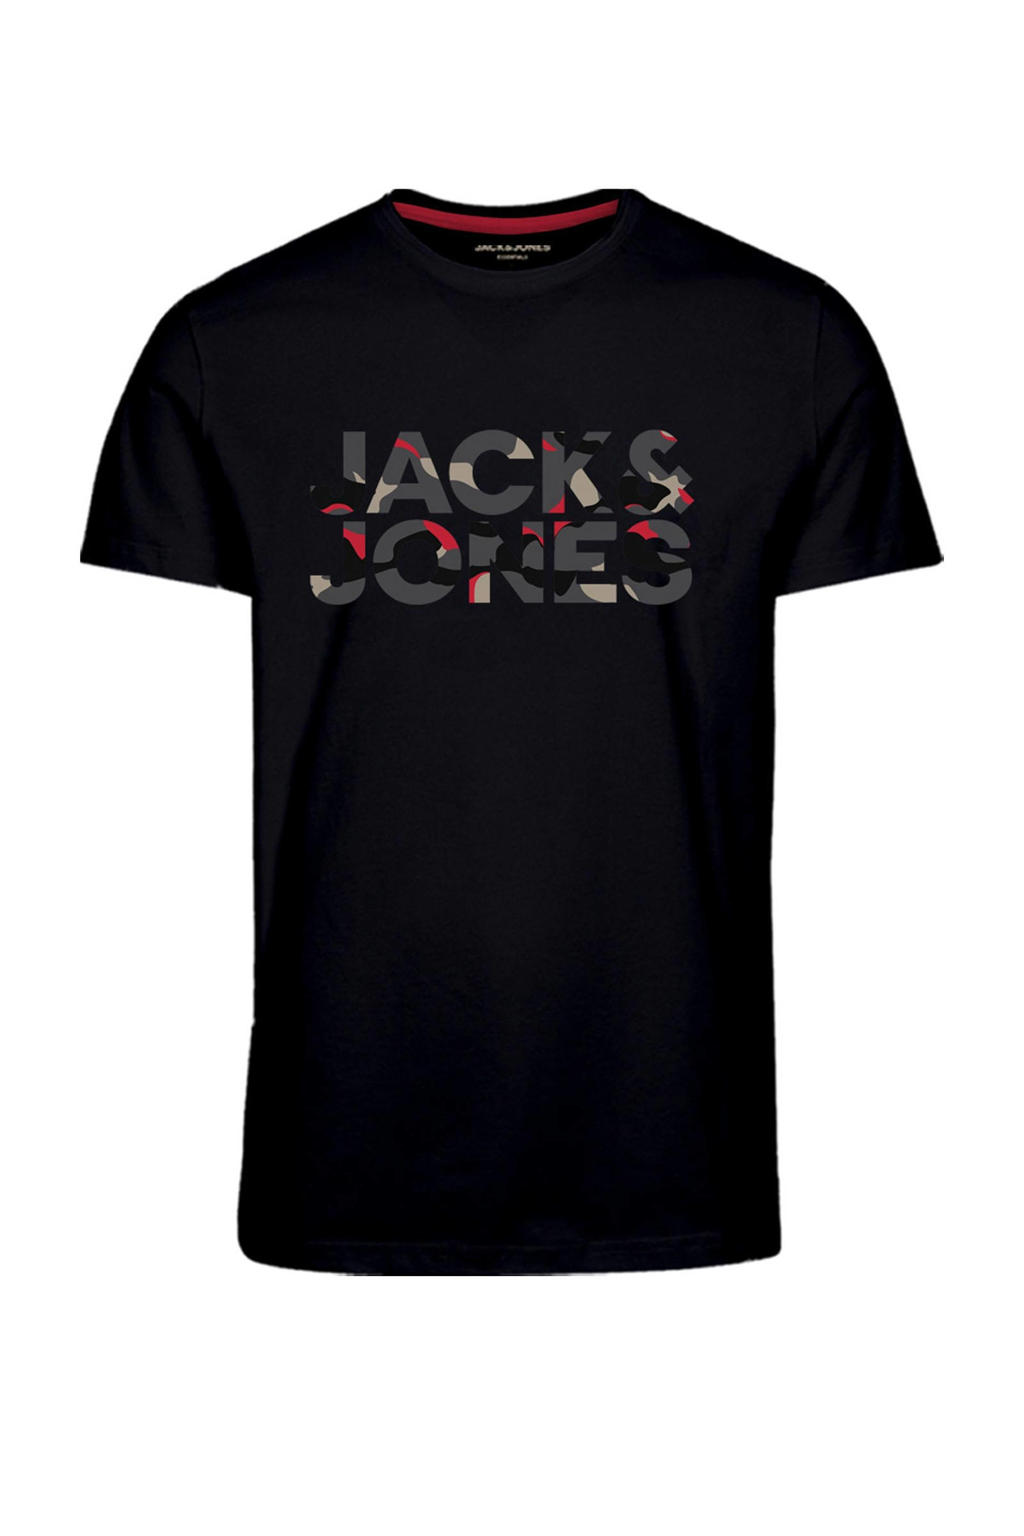 JACK & JONES T-shirt met logo zwart